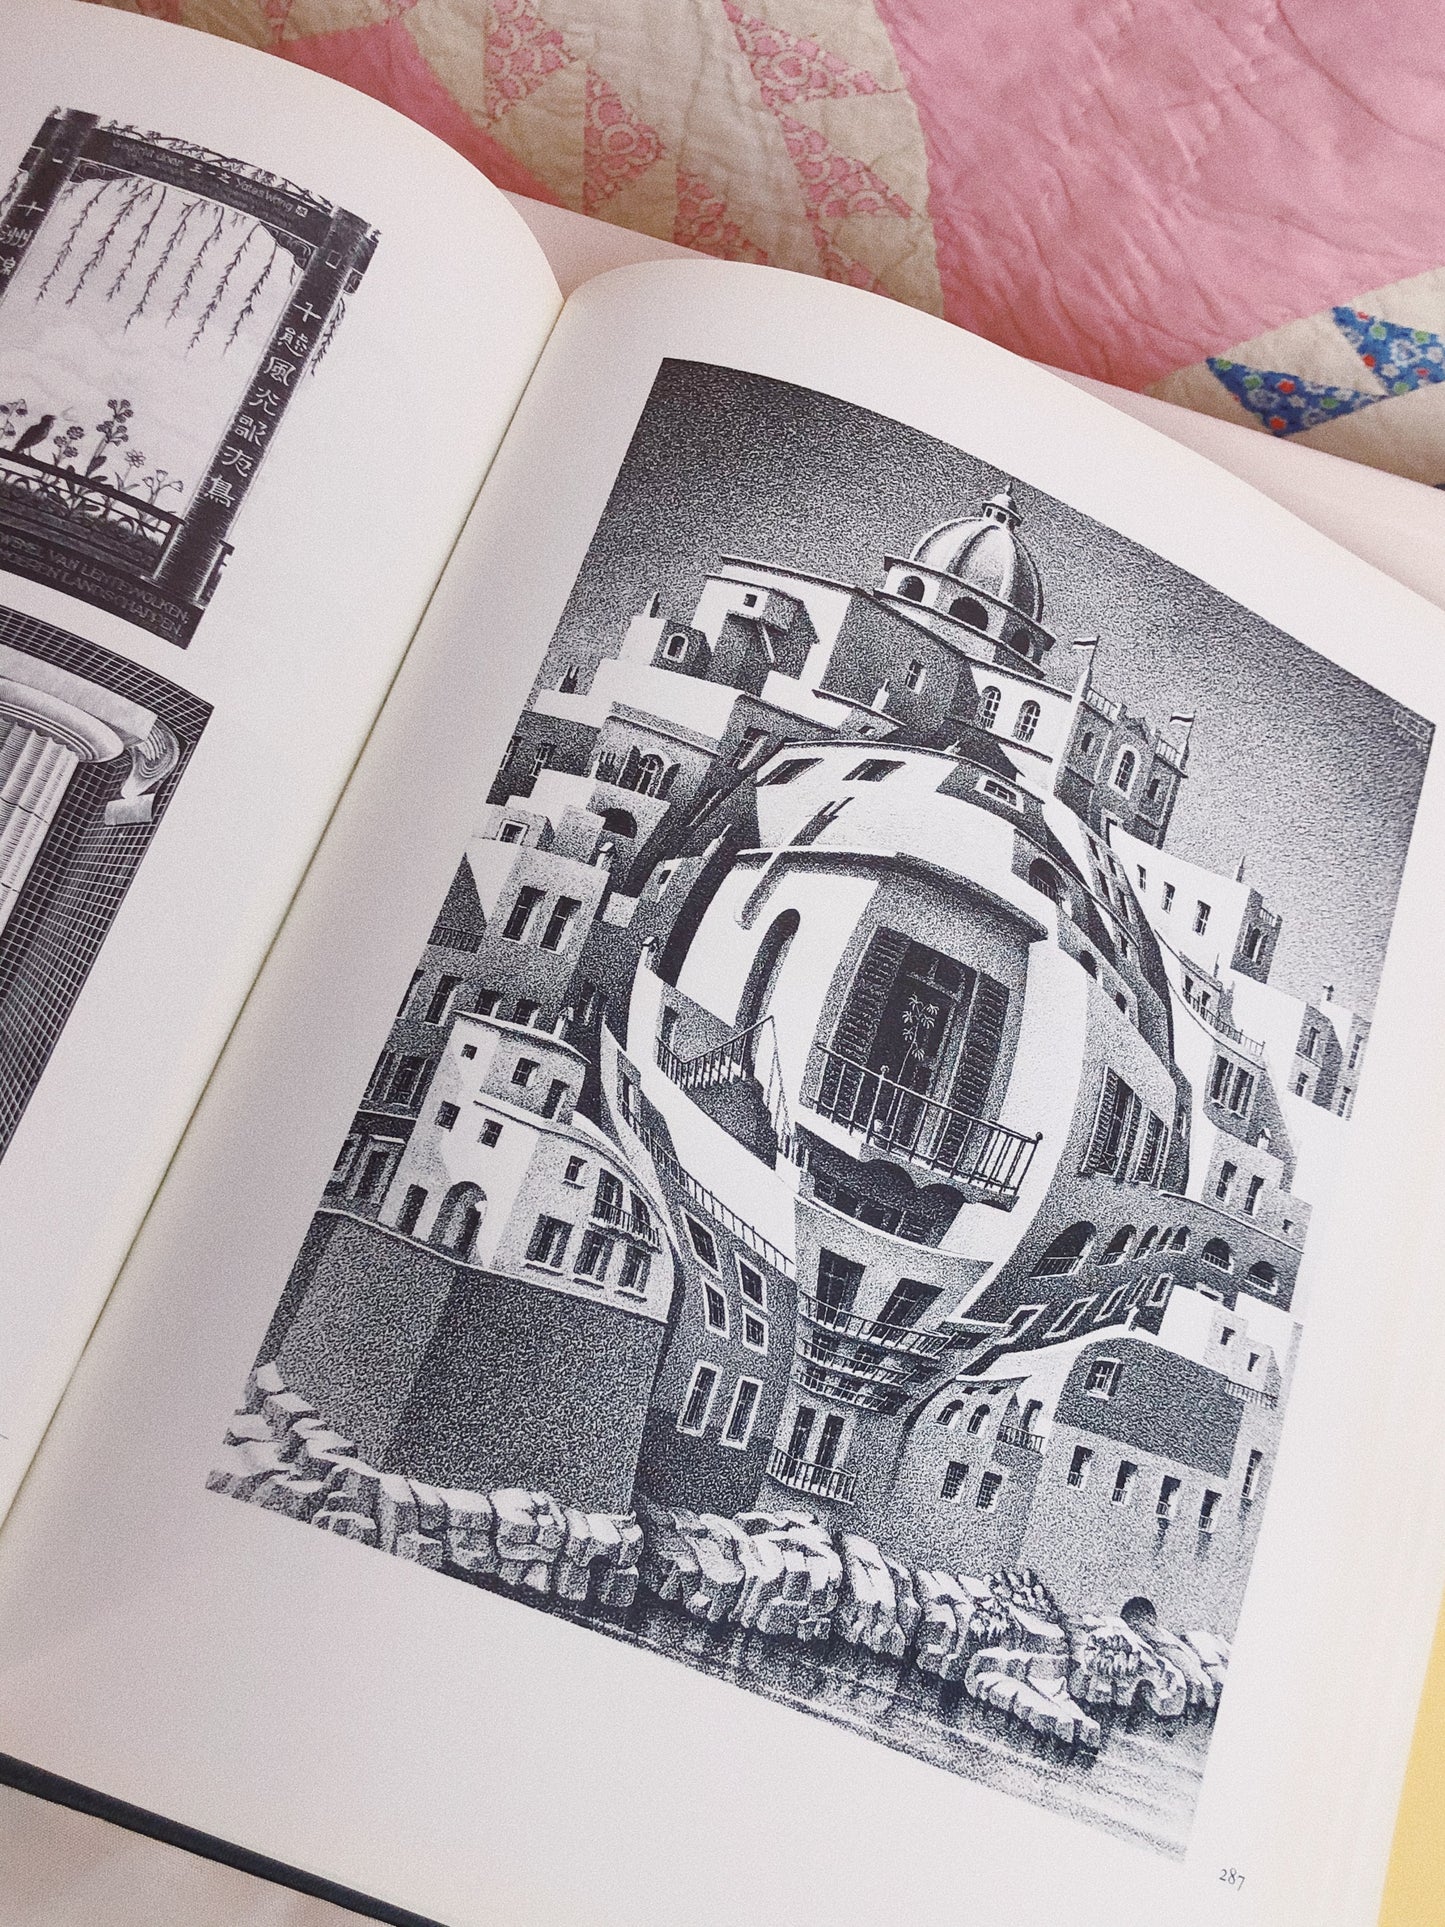 1980s MC Escher Art Book + Rare Dutch Paperback